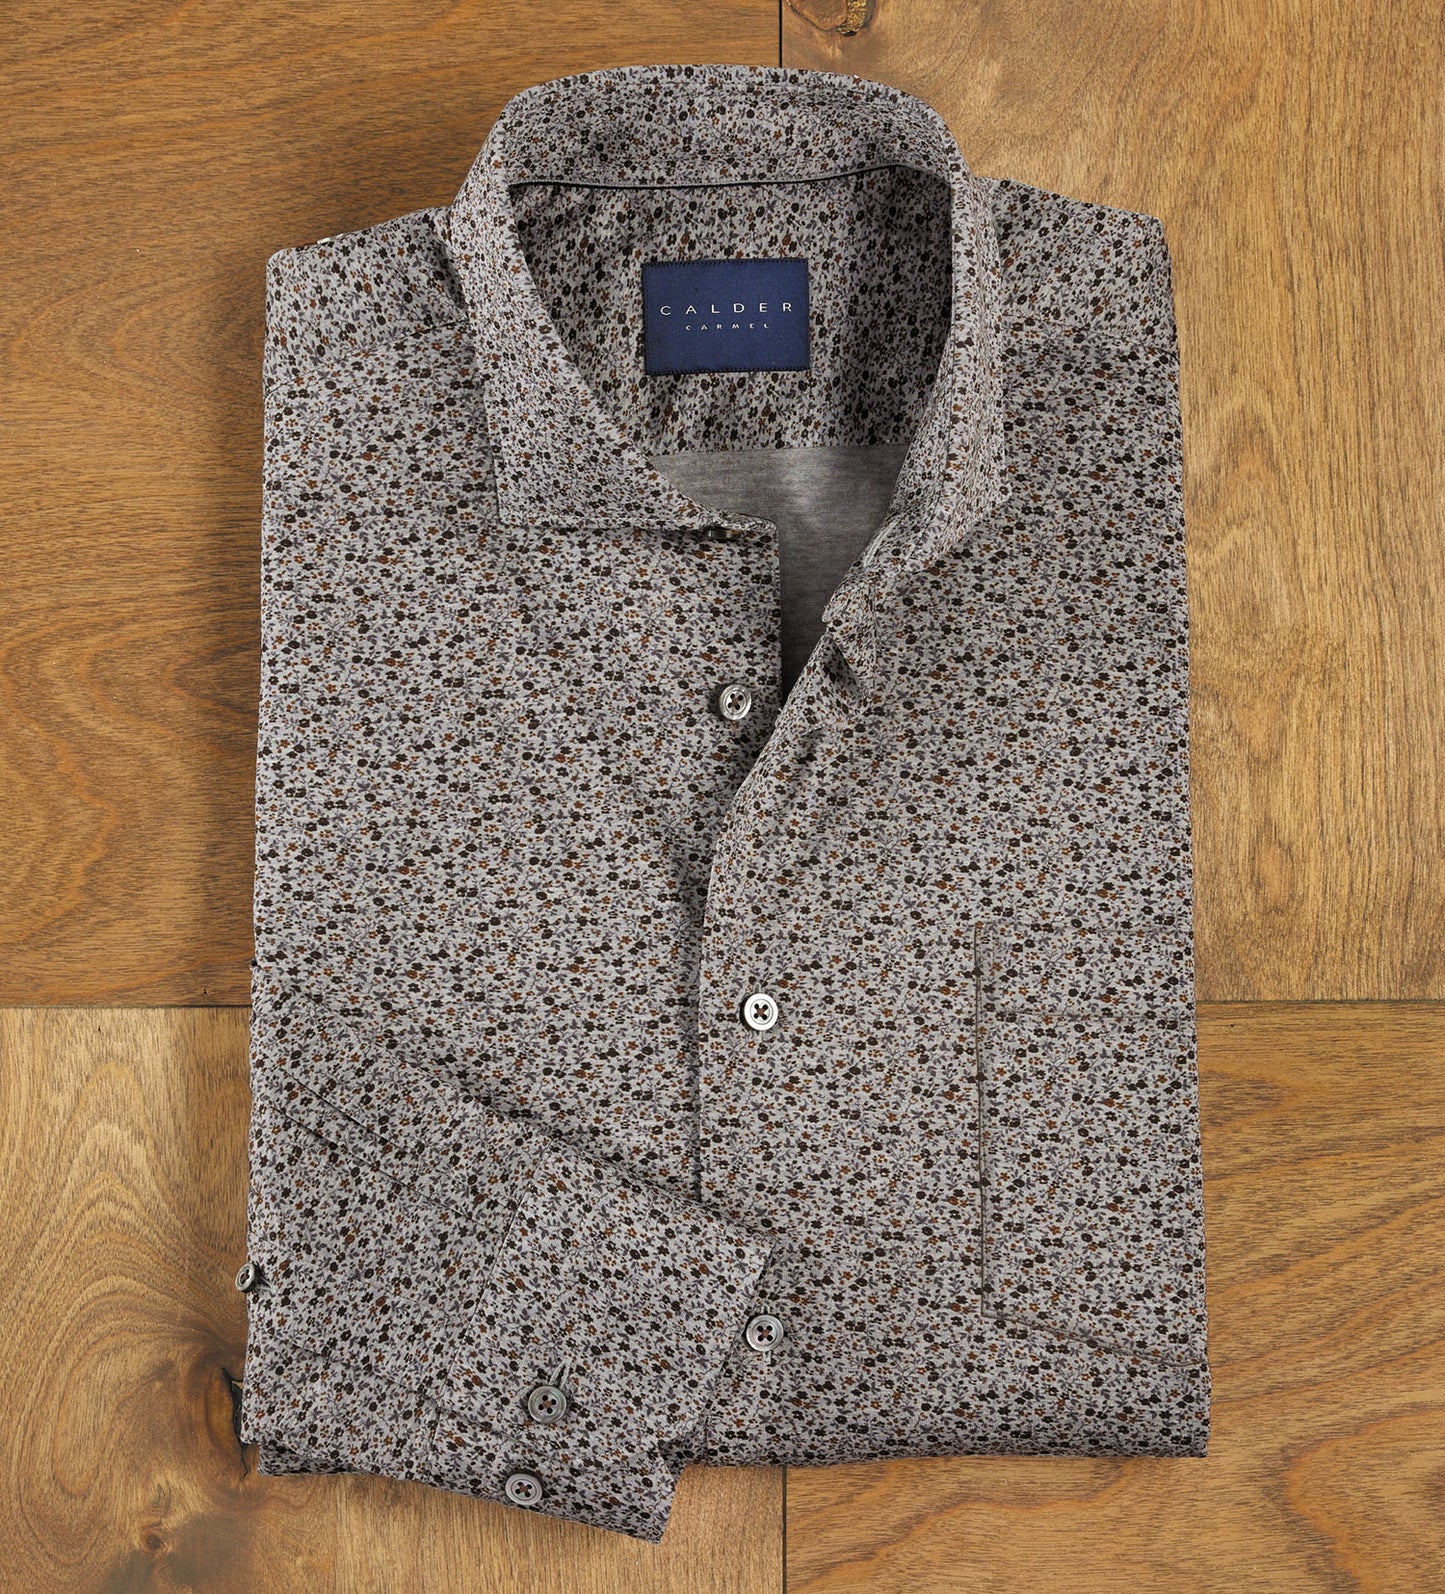 Calder Carmel Floral Long Sleeve Knit Shirt